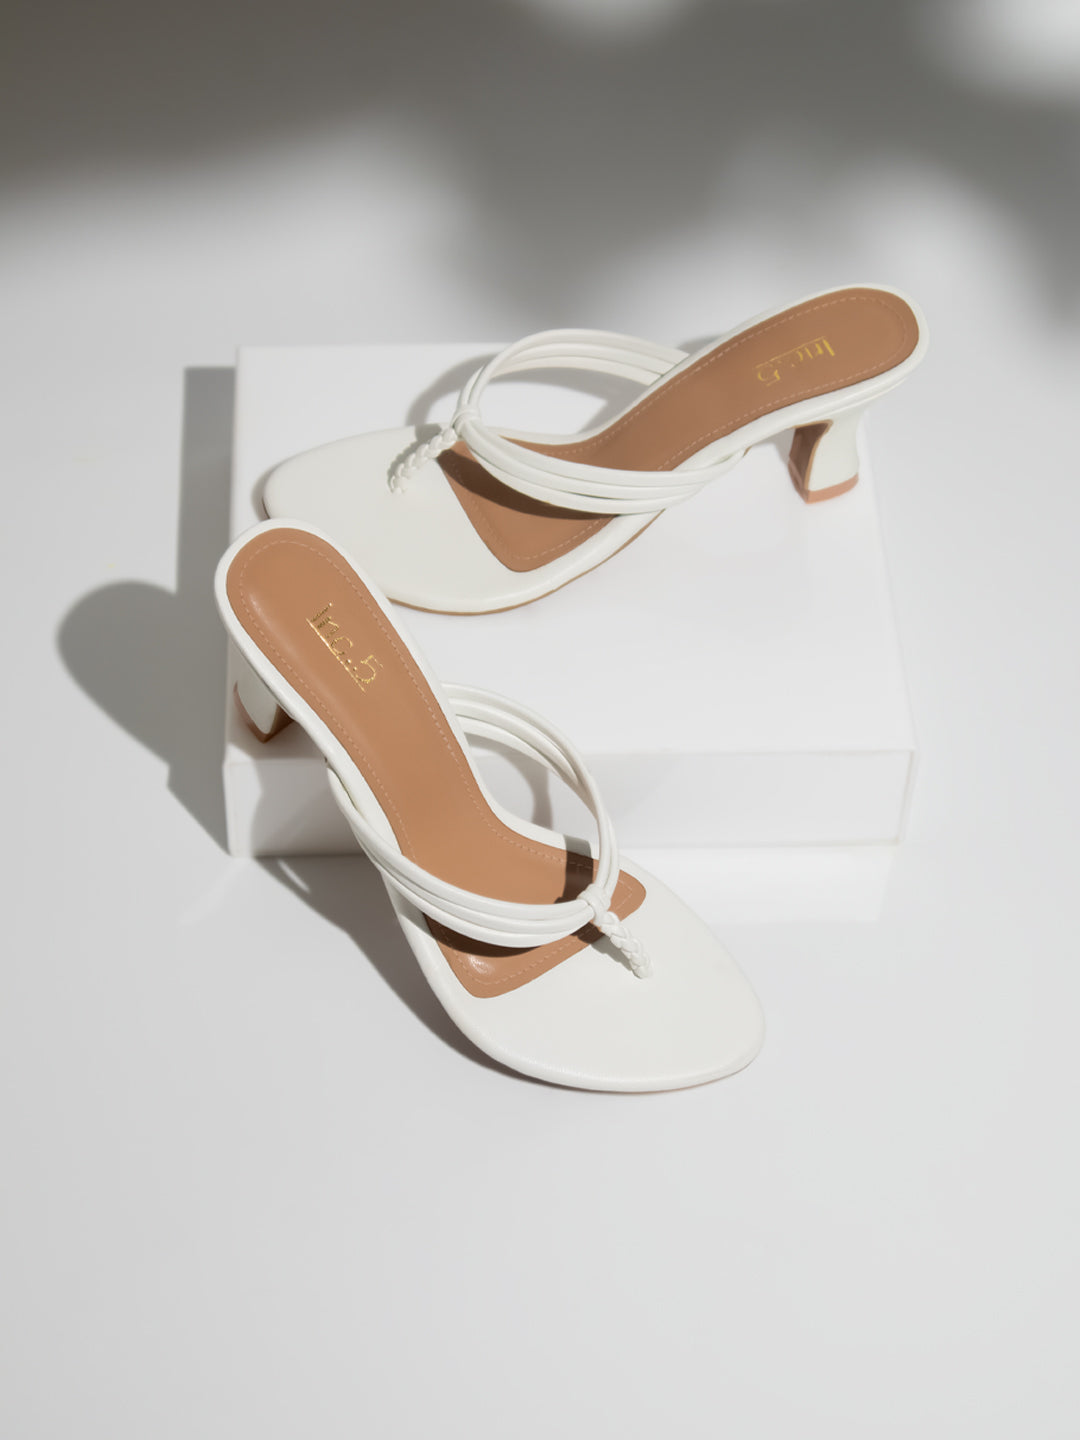 Buy Now Women White Striped Open Toe Kitten Heels – Inc5 Shoes